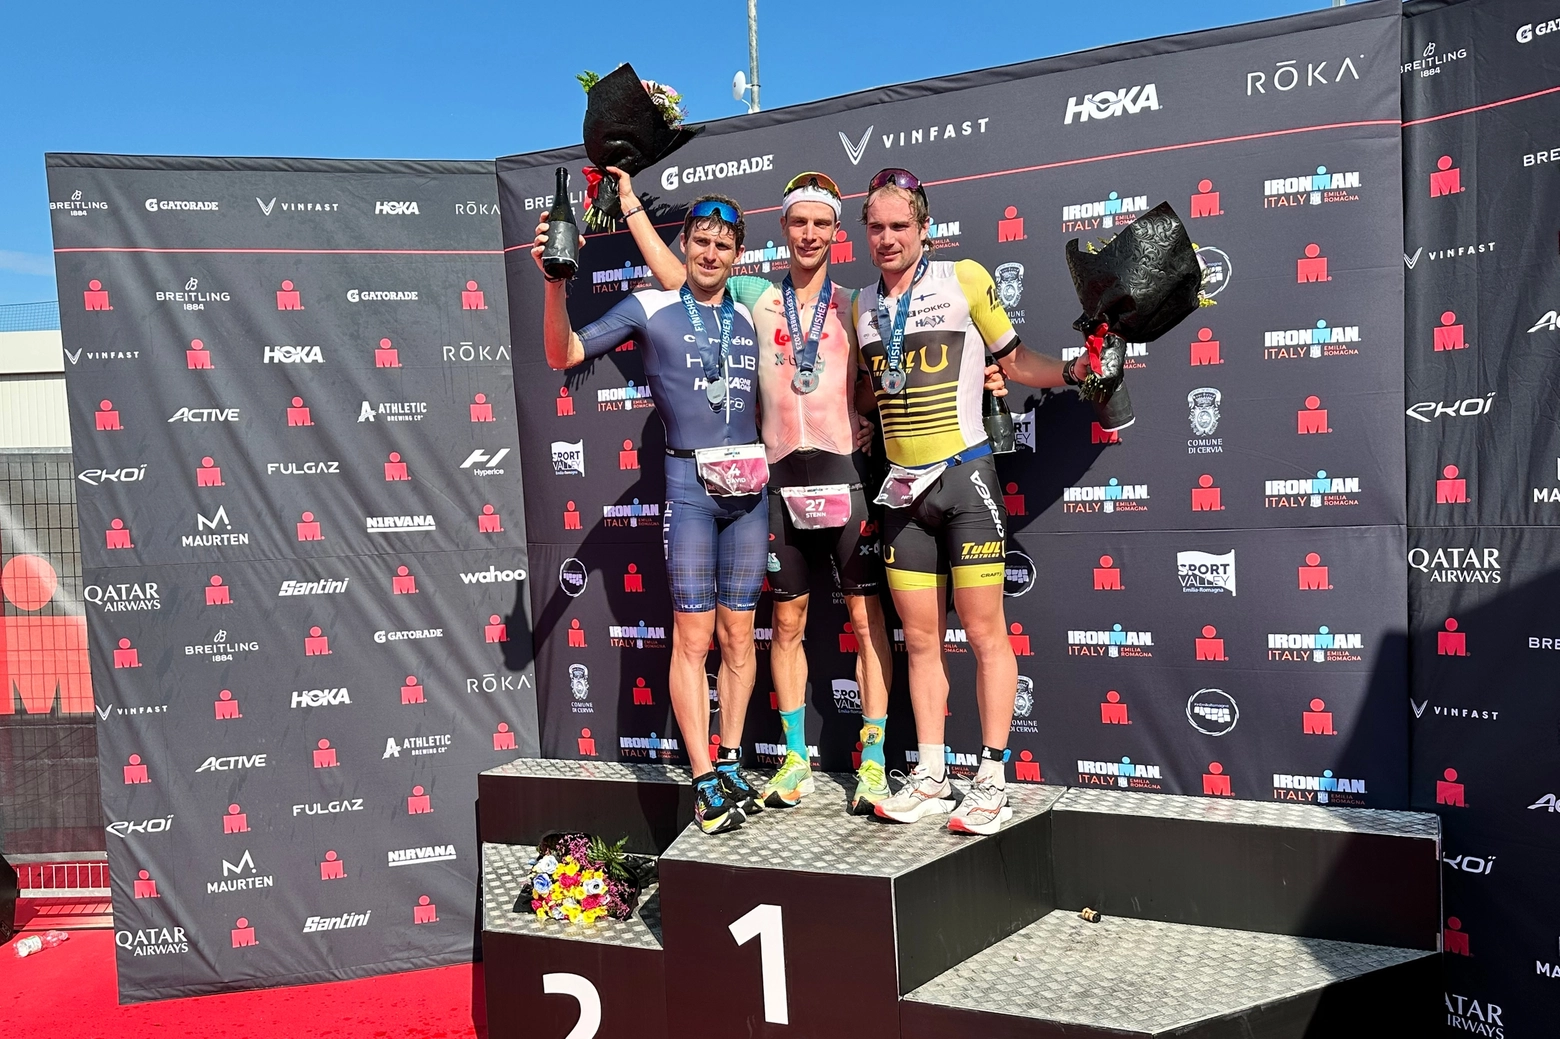 Il podio dell'Ironman: i triatleti della lunga distanza